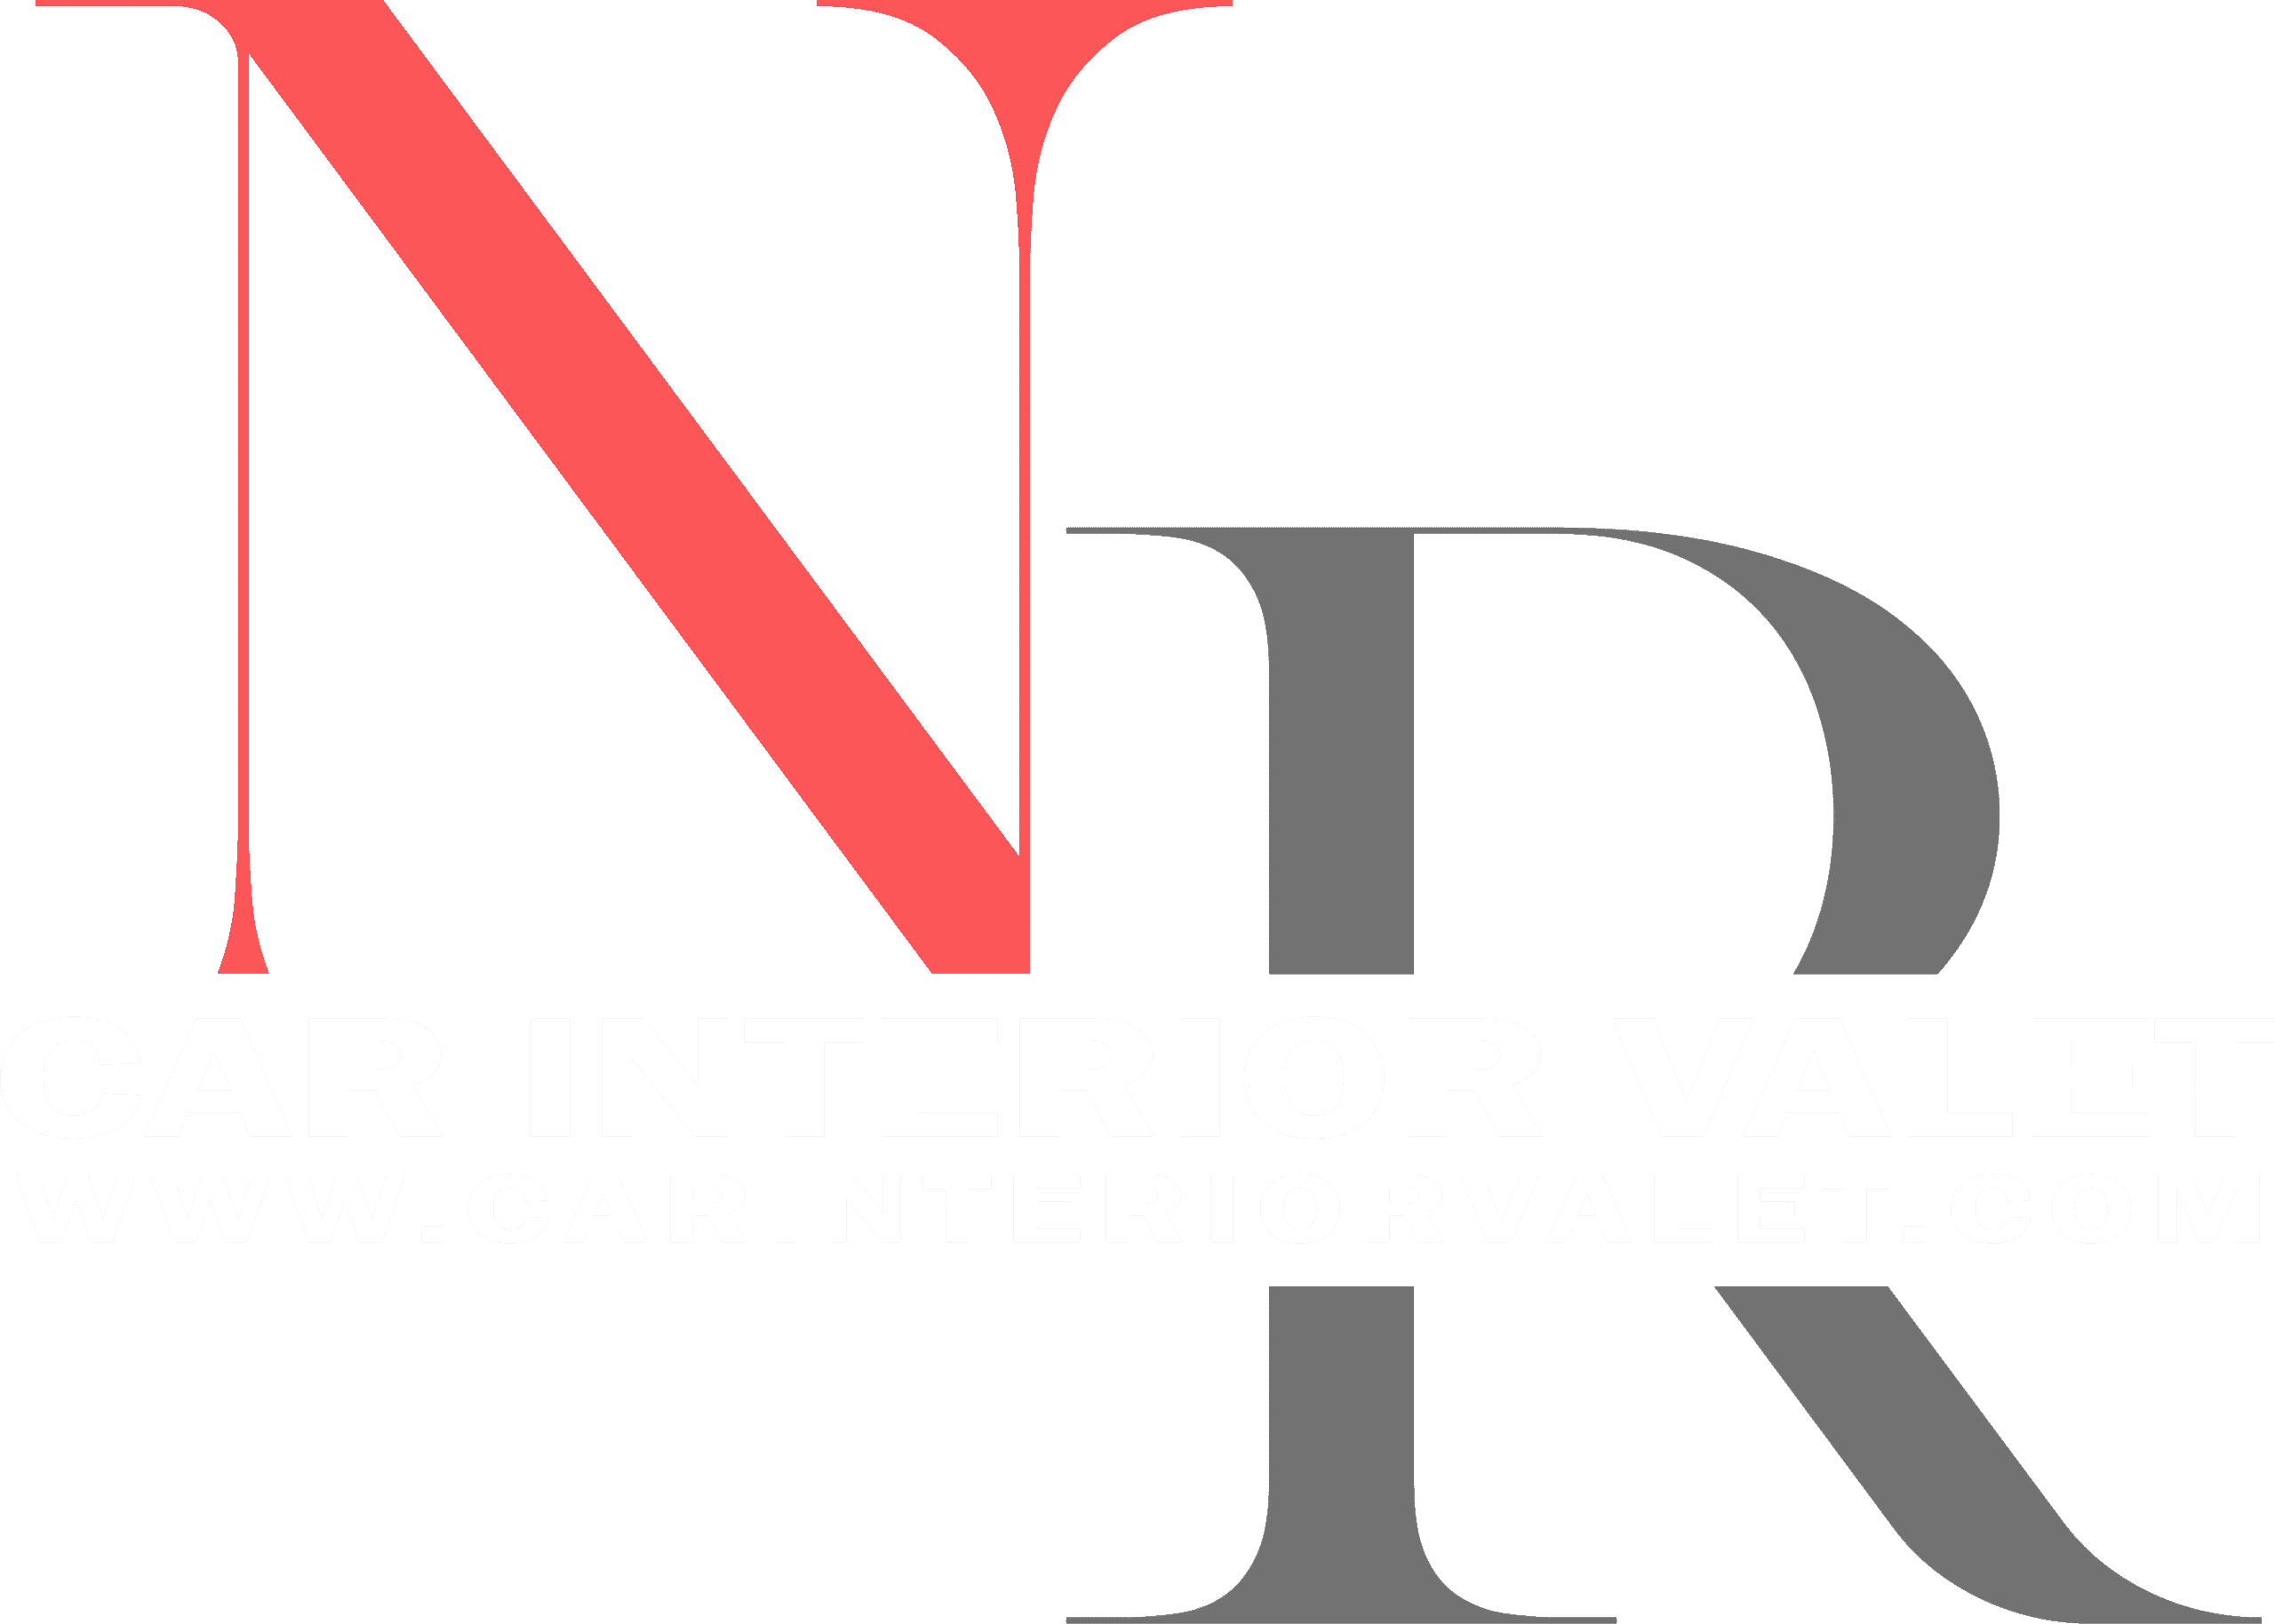 N&R Car Interior Valet